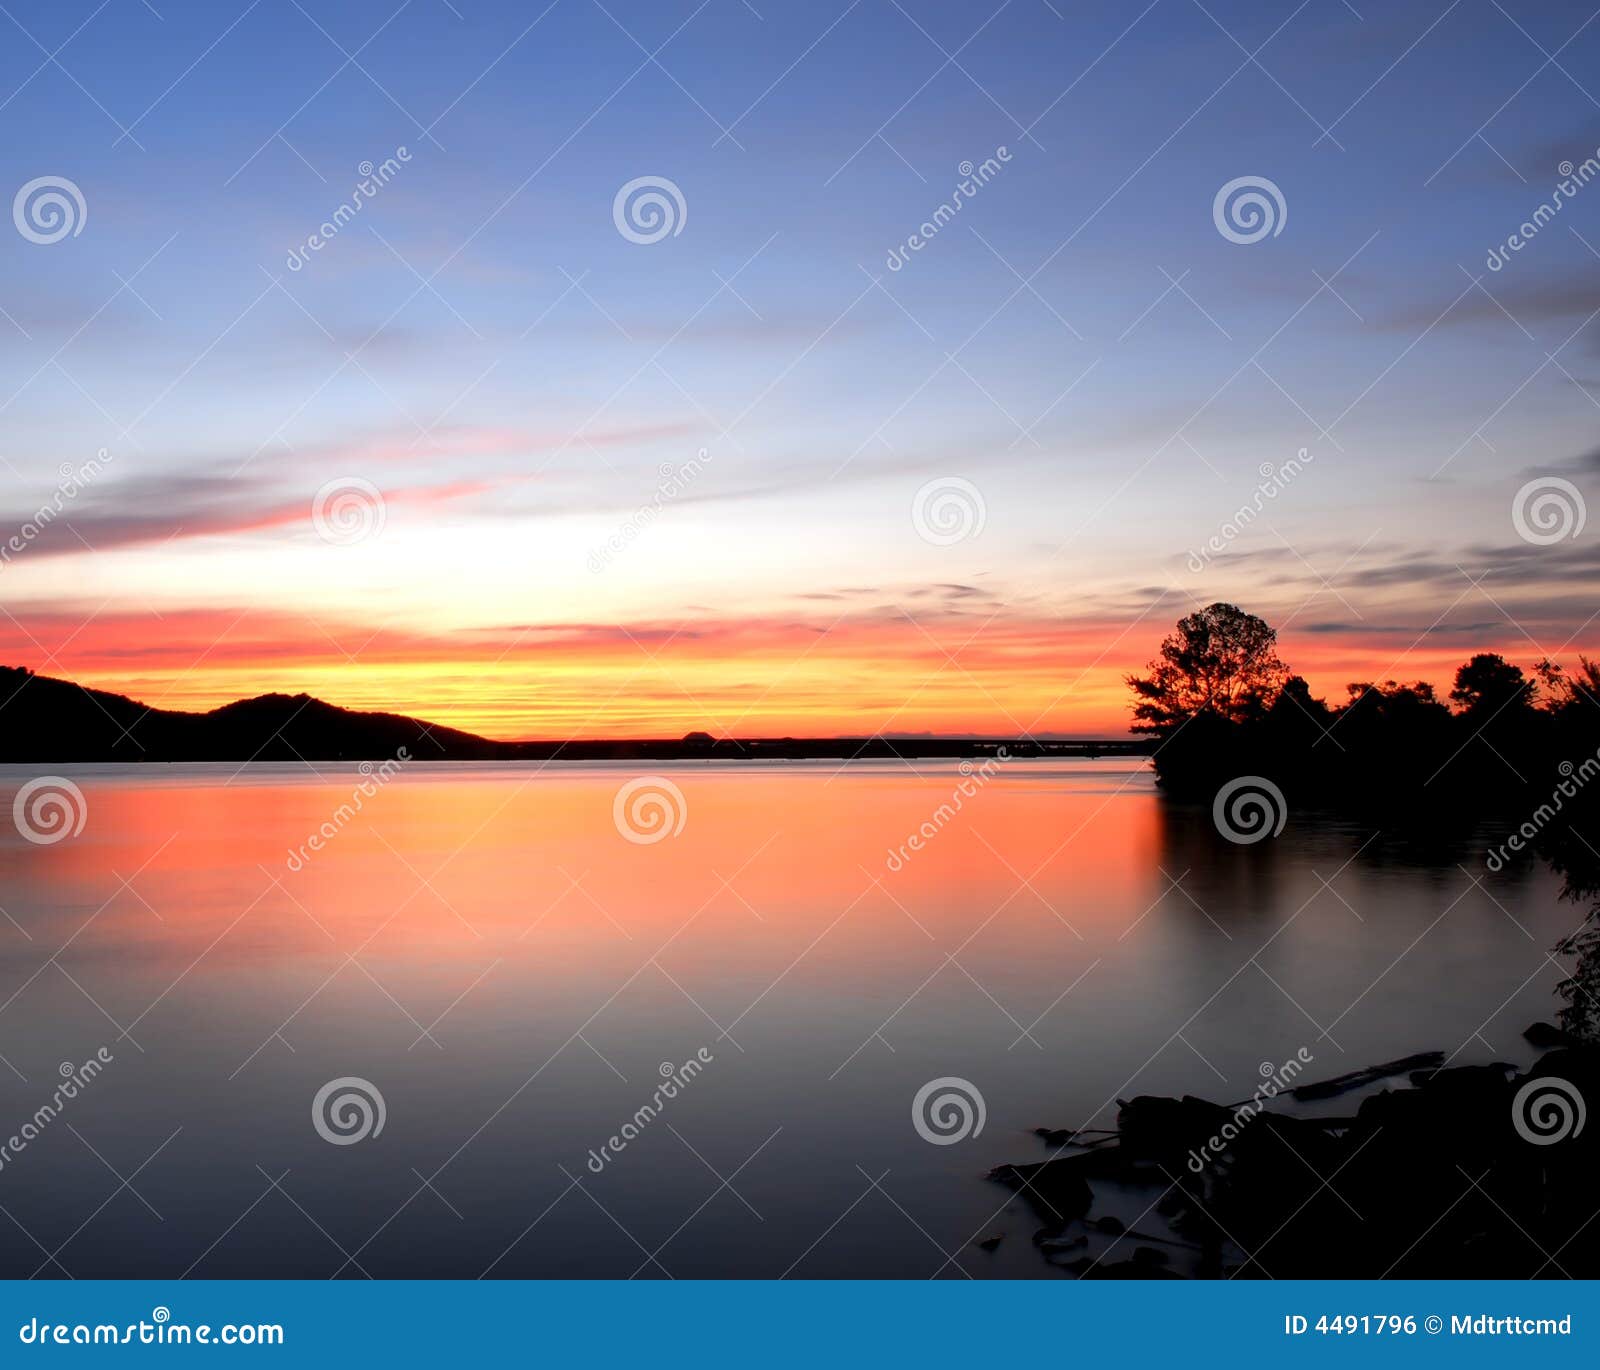 arkansas river sunset